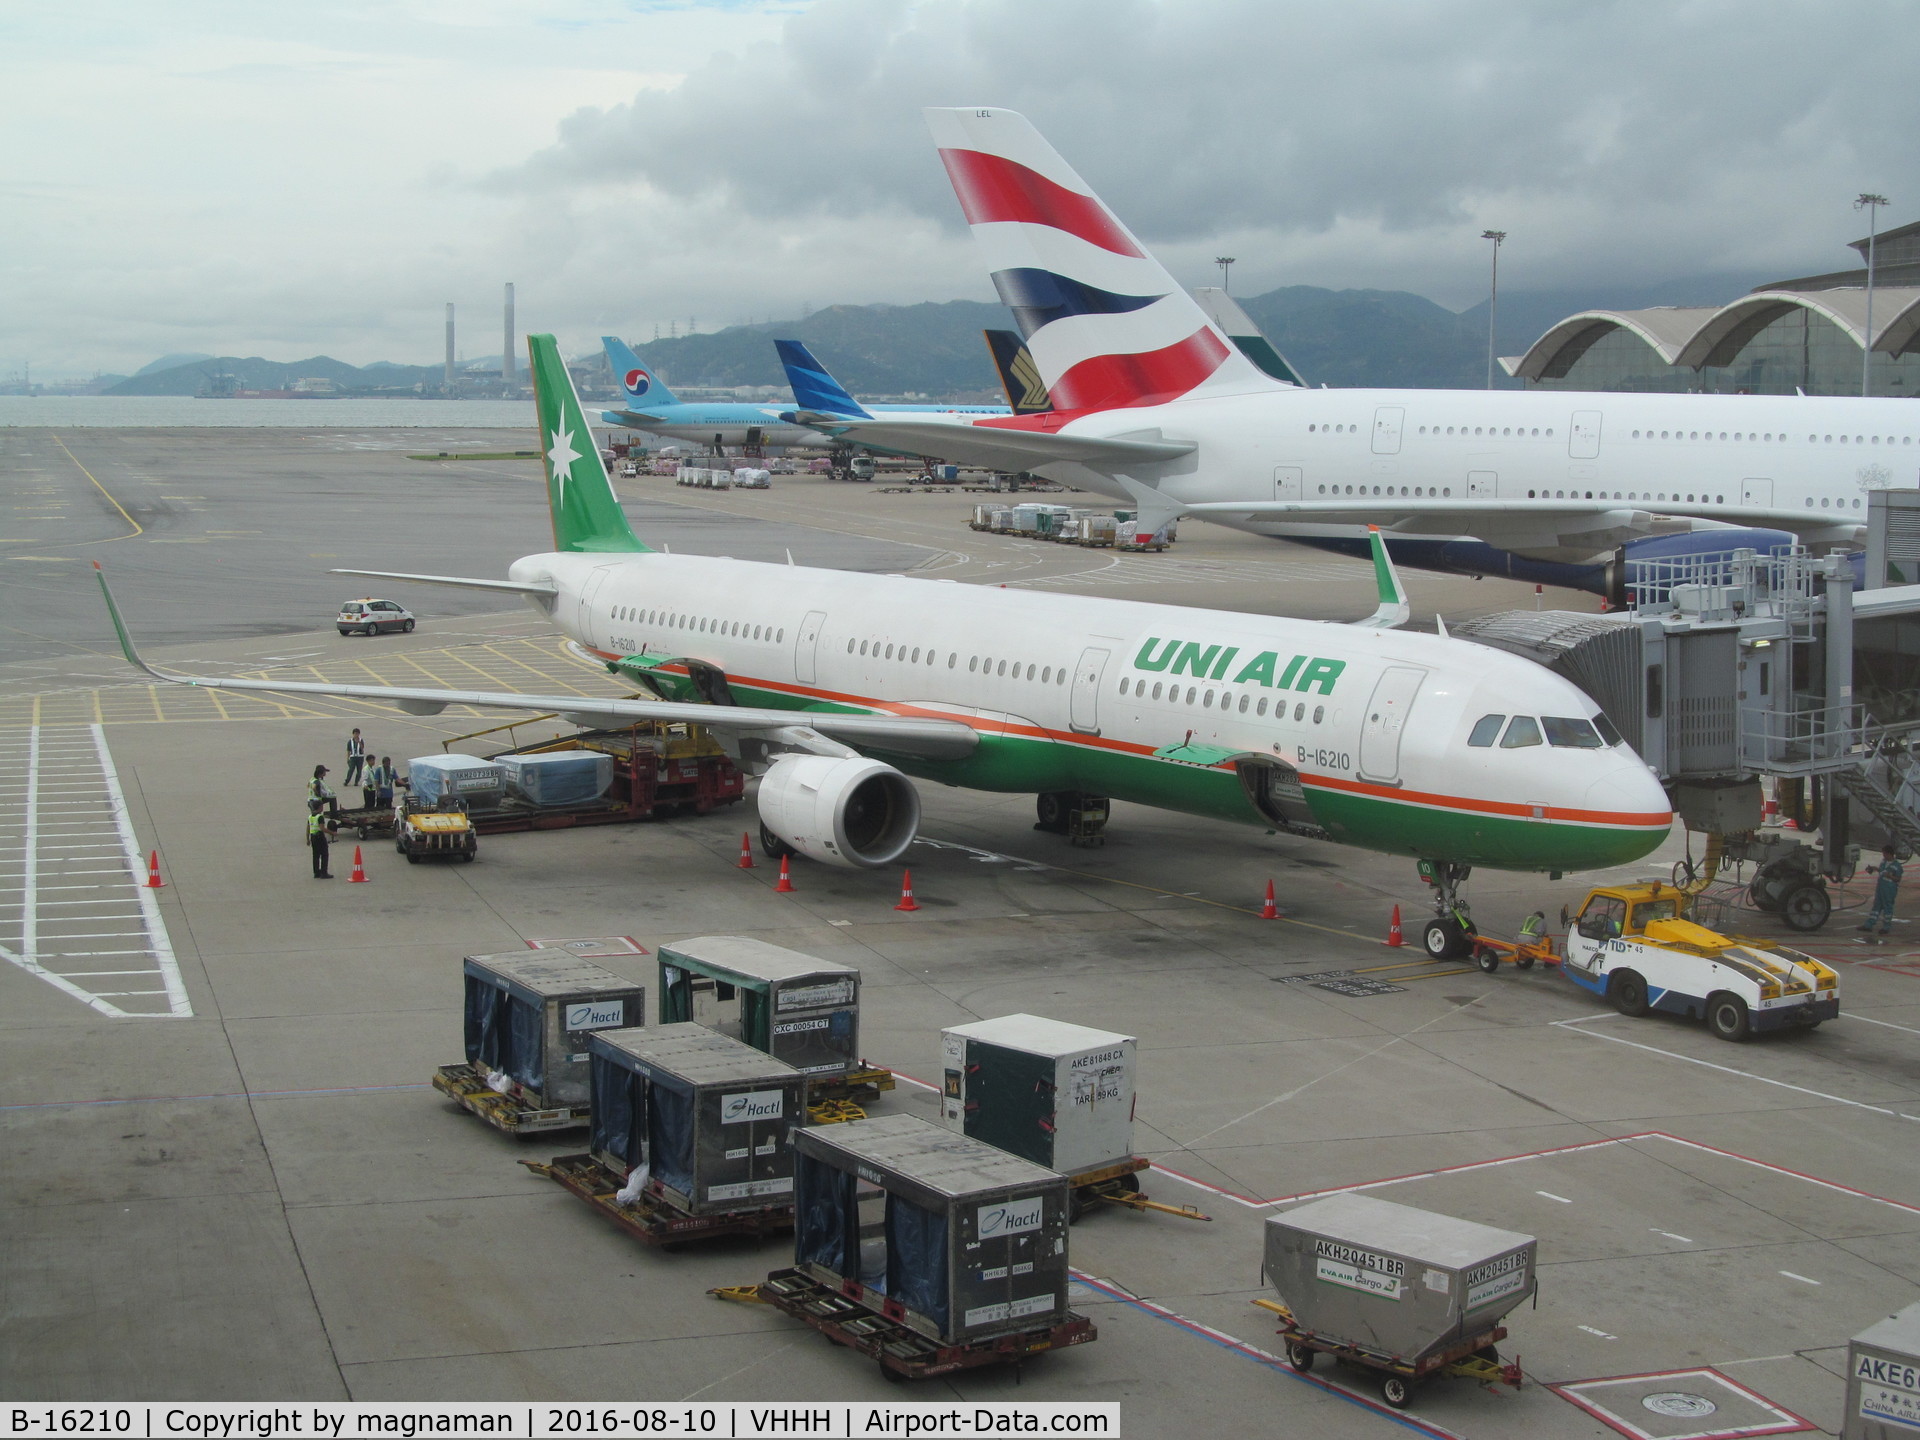 B-16210, 2014 Airbus A321-211 C/N 6087, with uni air titles